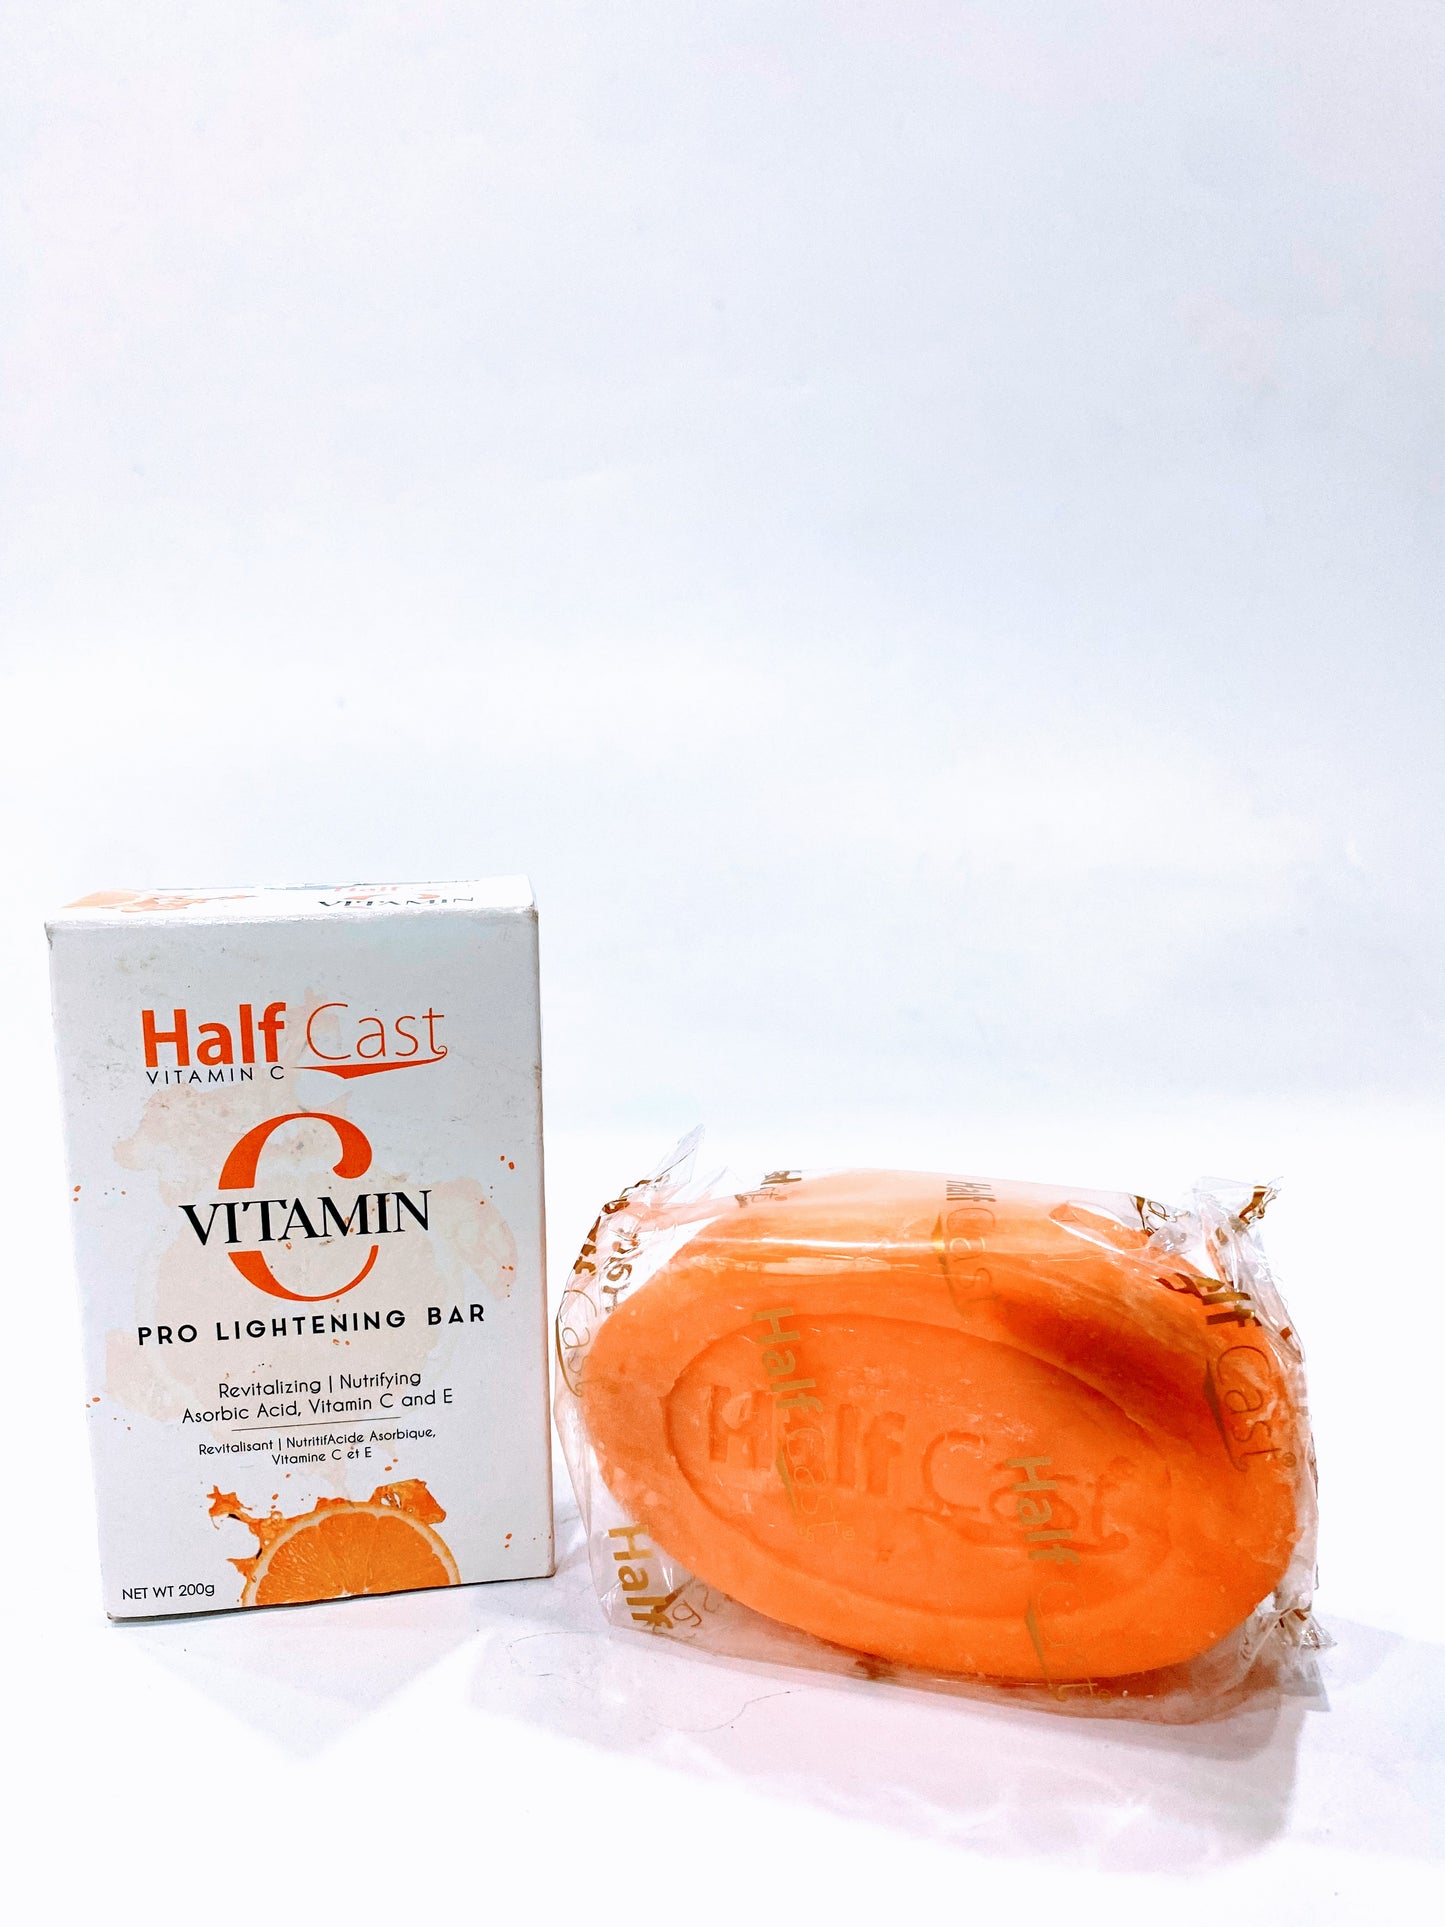 Half Cast Vitamin C Pro Lightening Bar